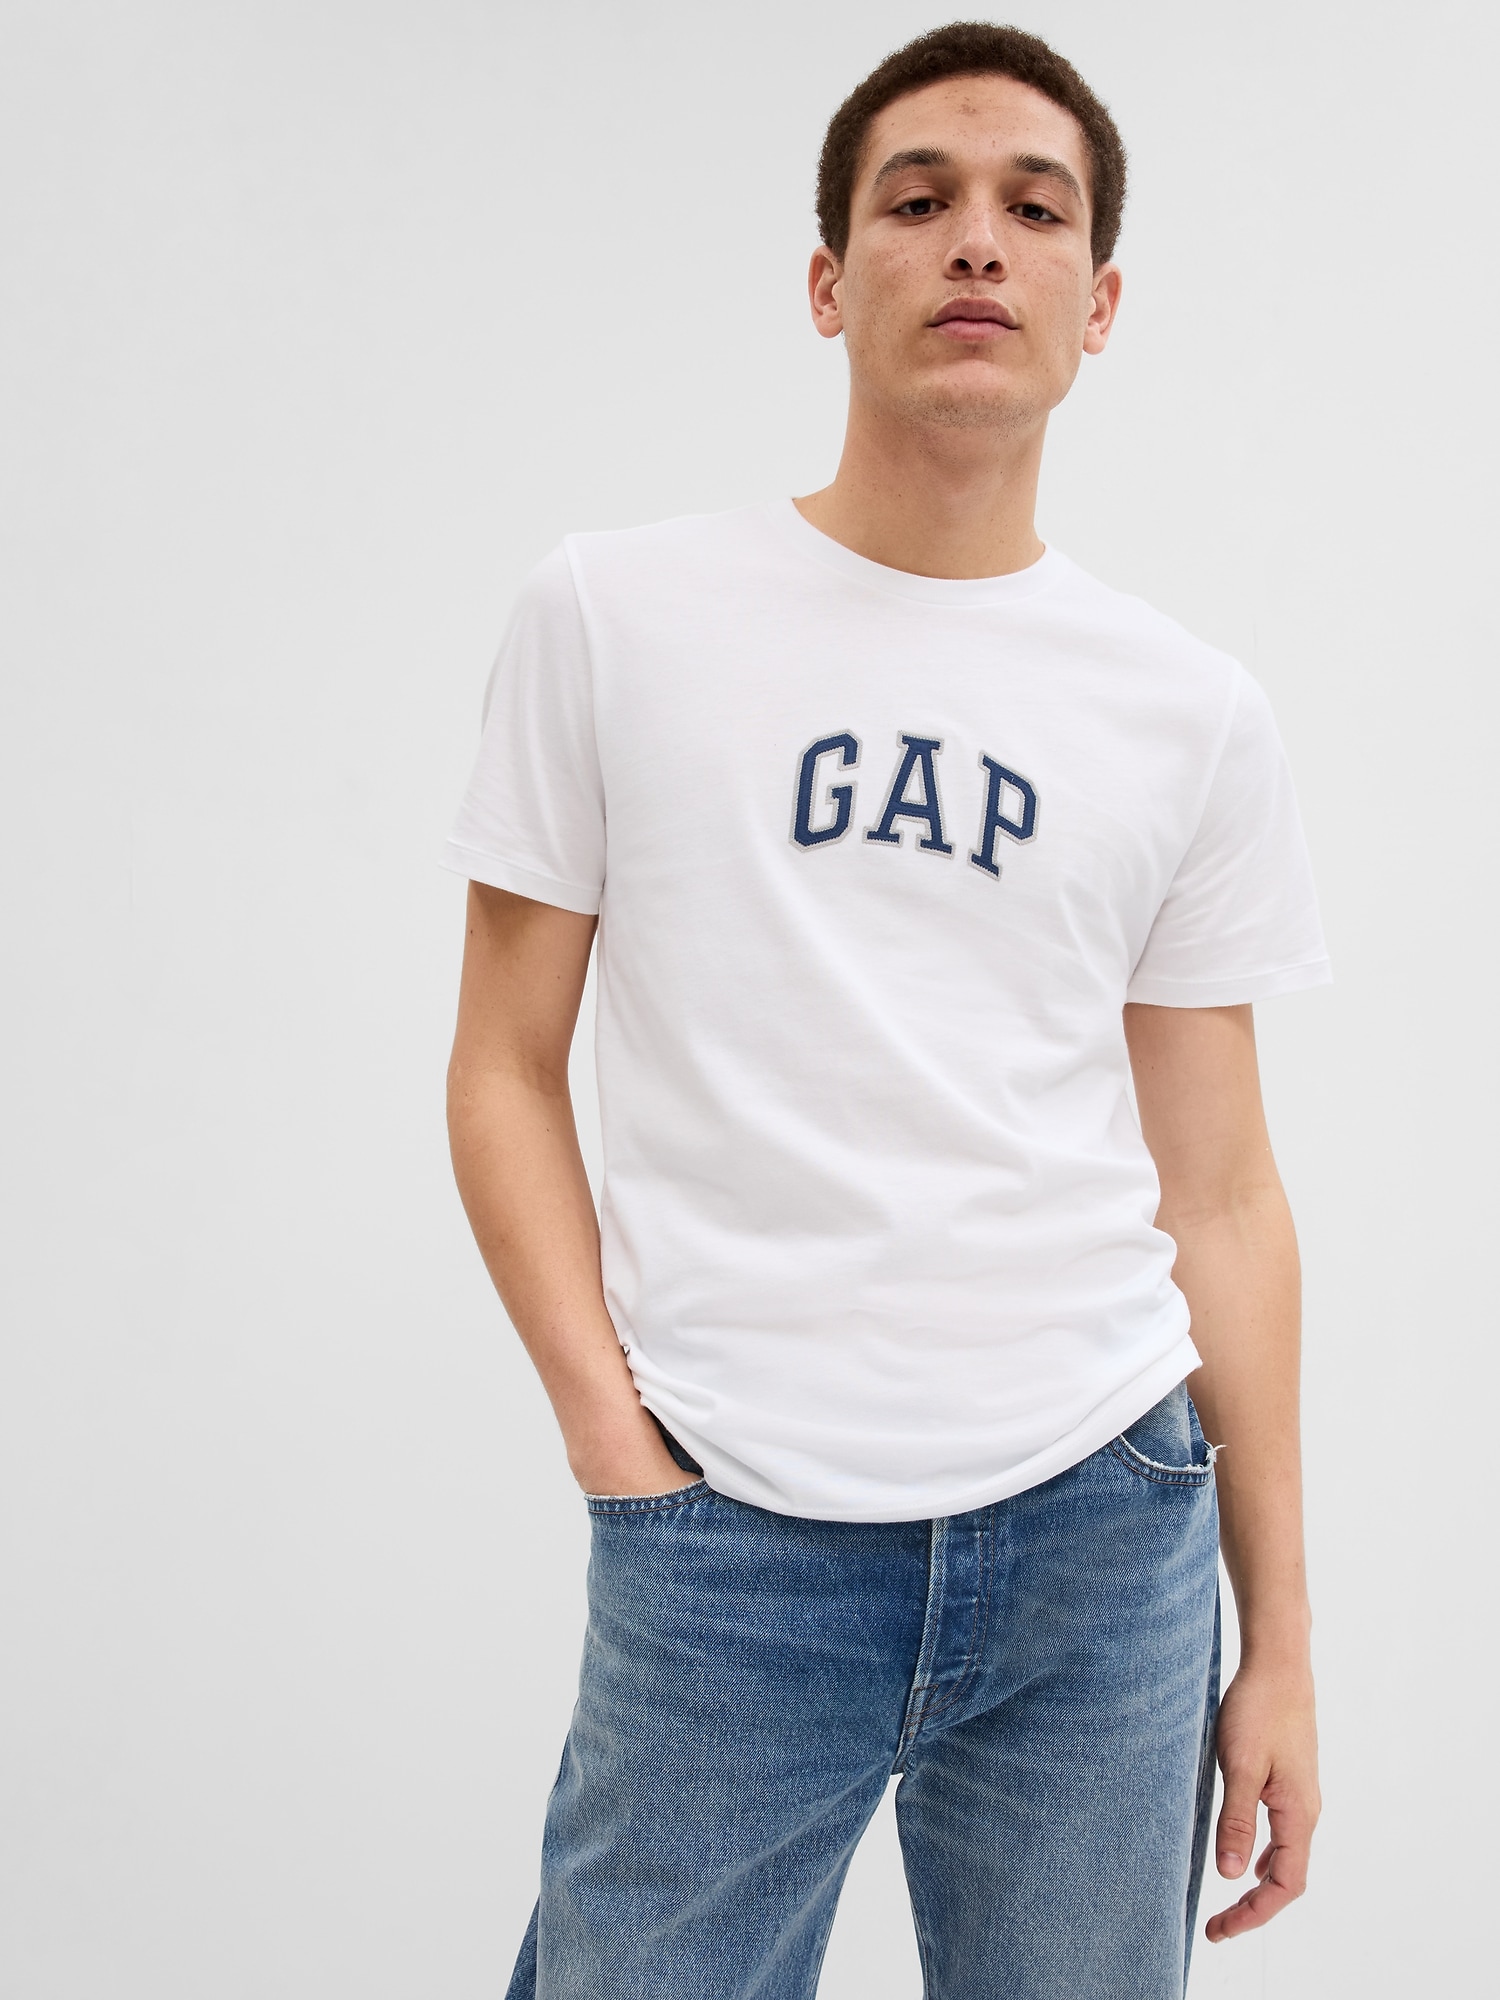 GAP Tシャツ - トップス